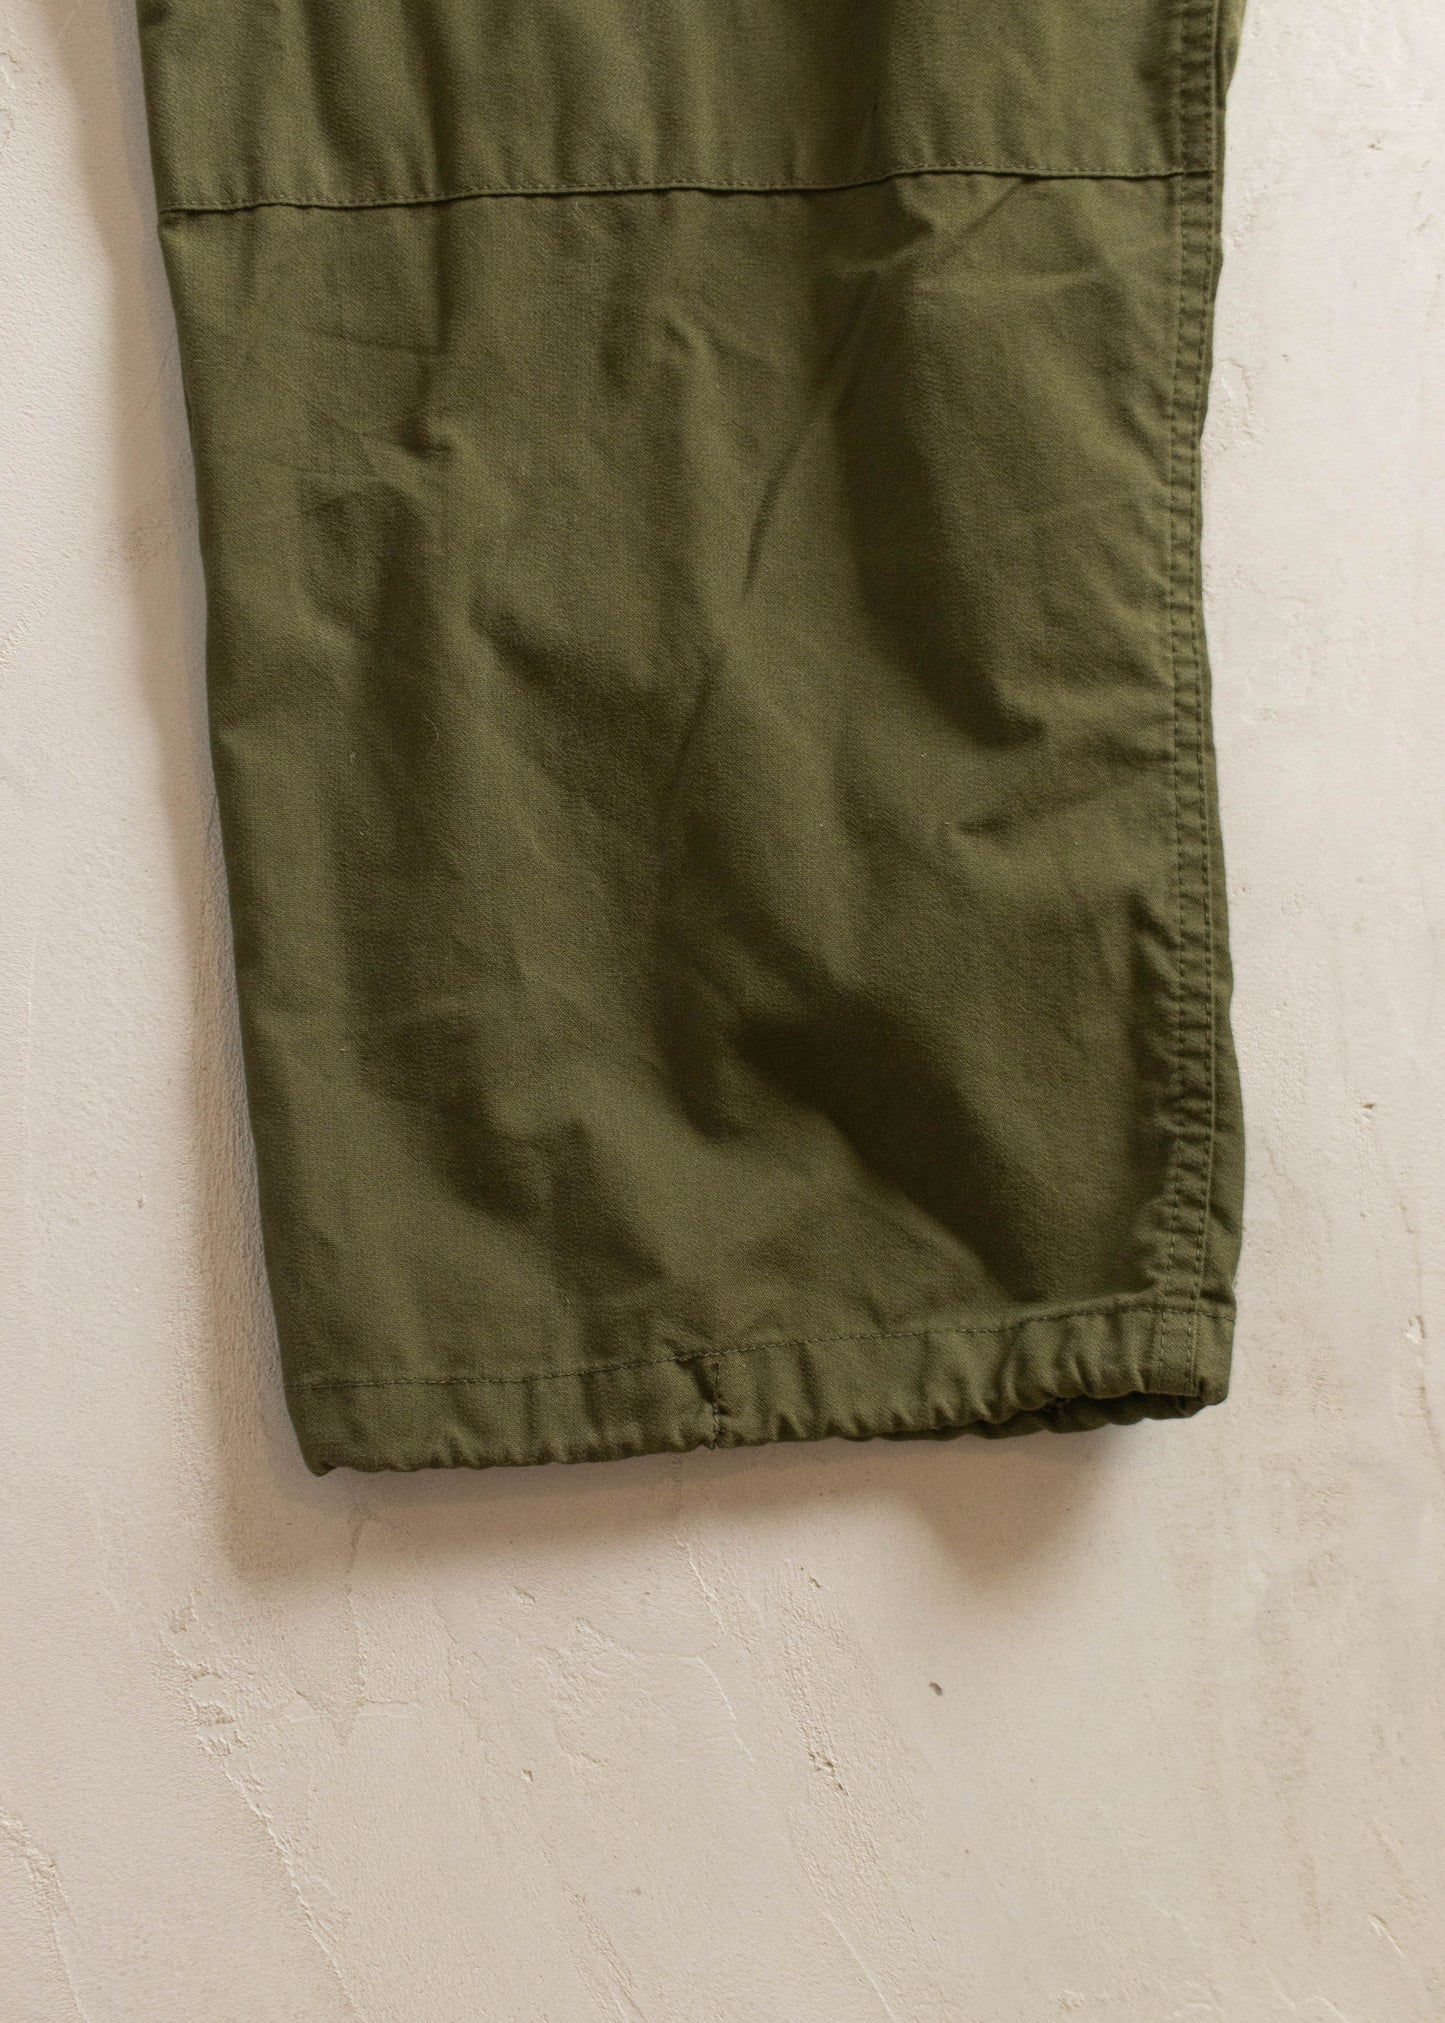 Vintage 1980s Military Cargo Pants Size Women's 40 Men's 42